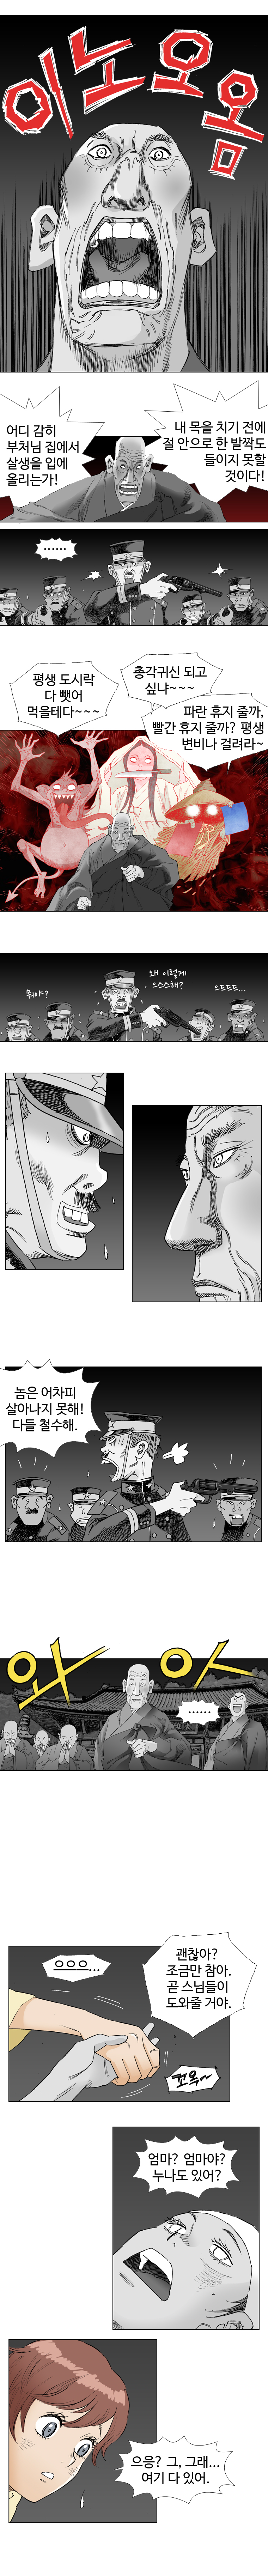 웹툰 백초월 2화-7